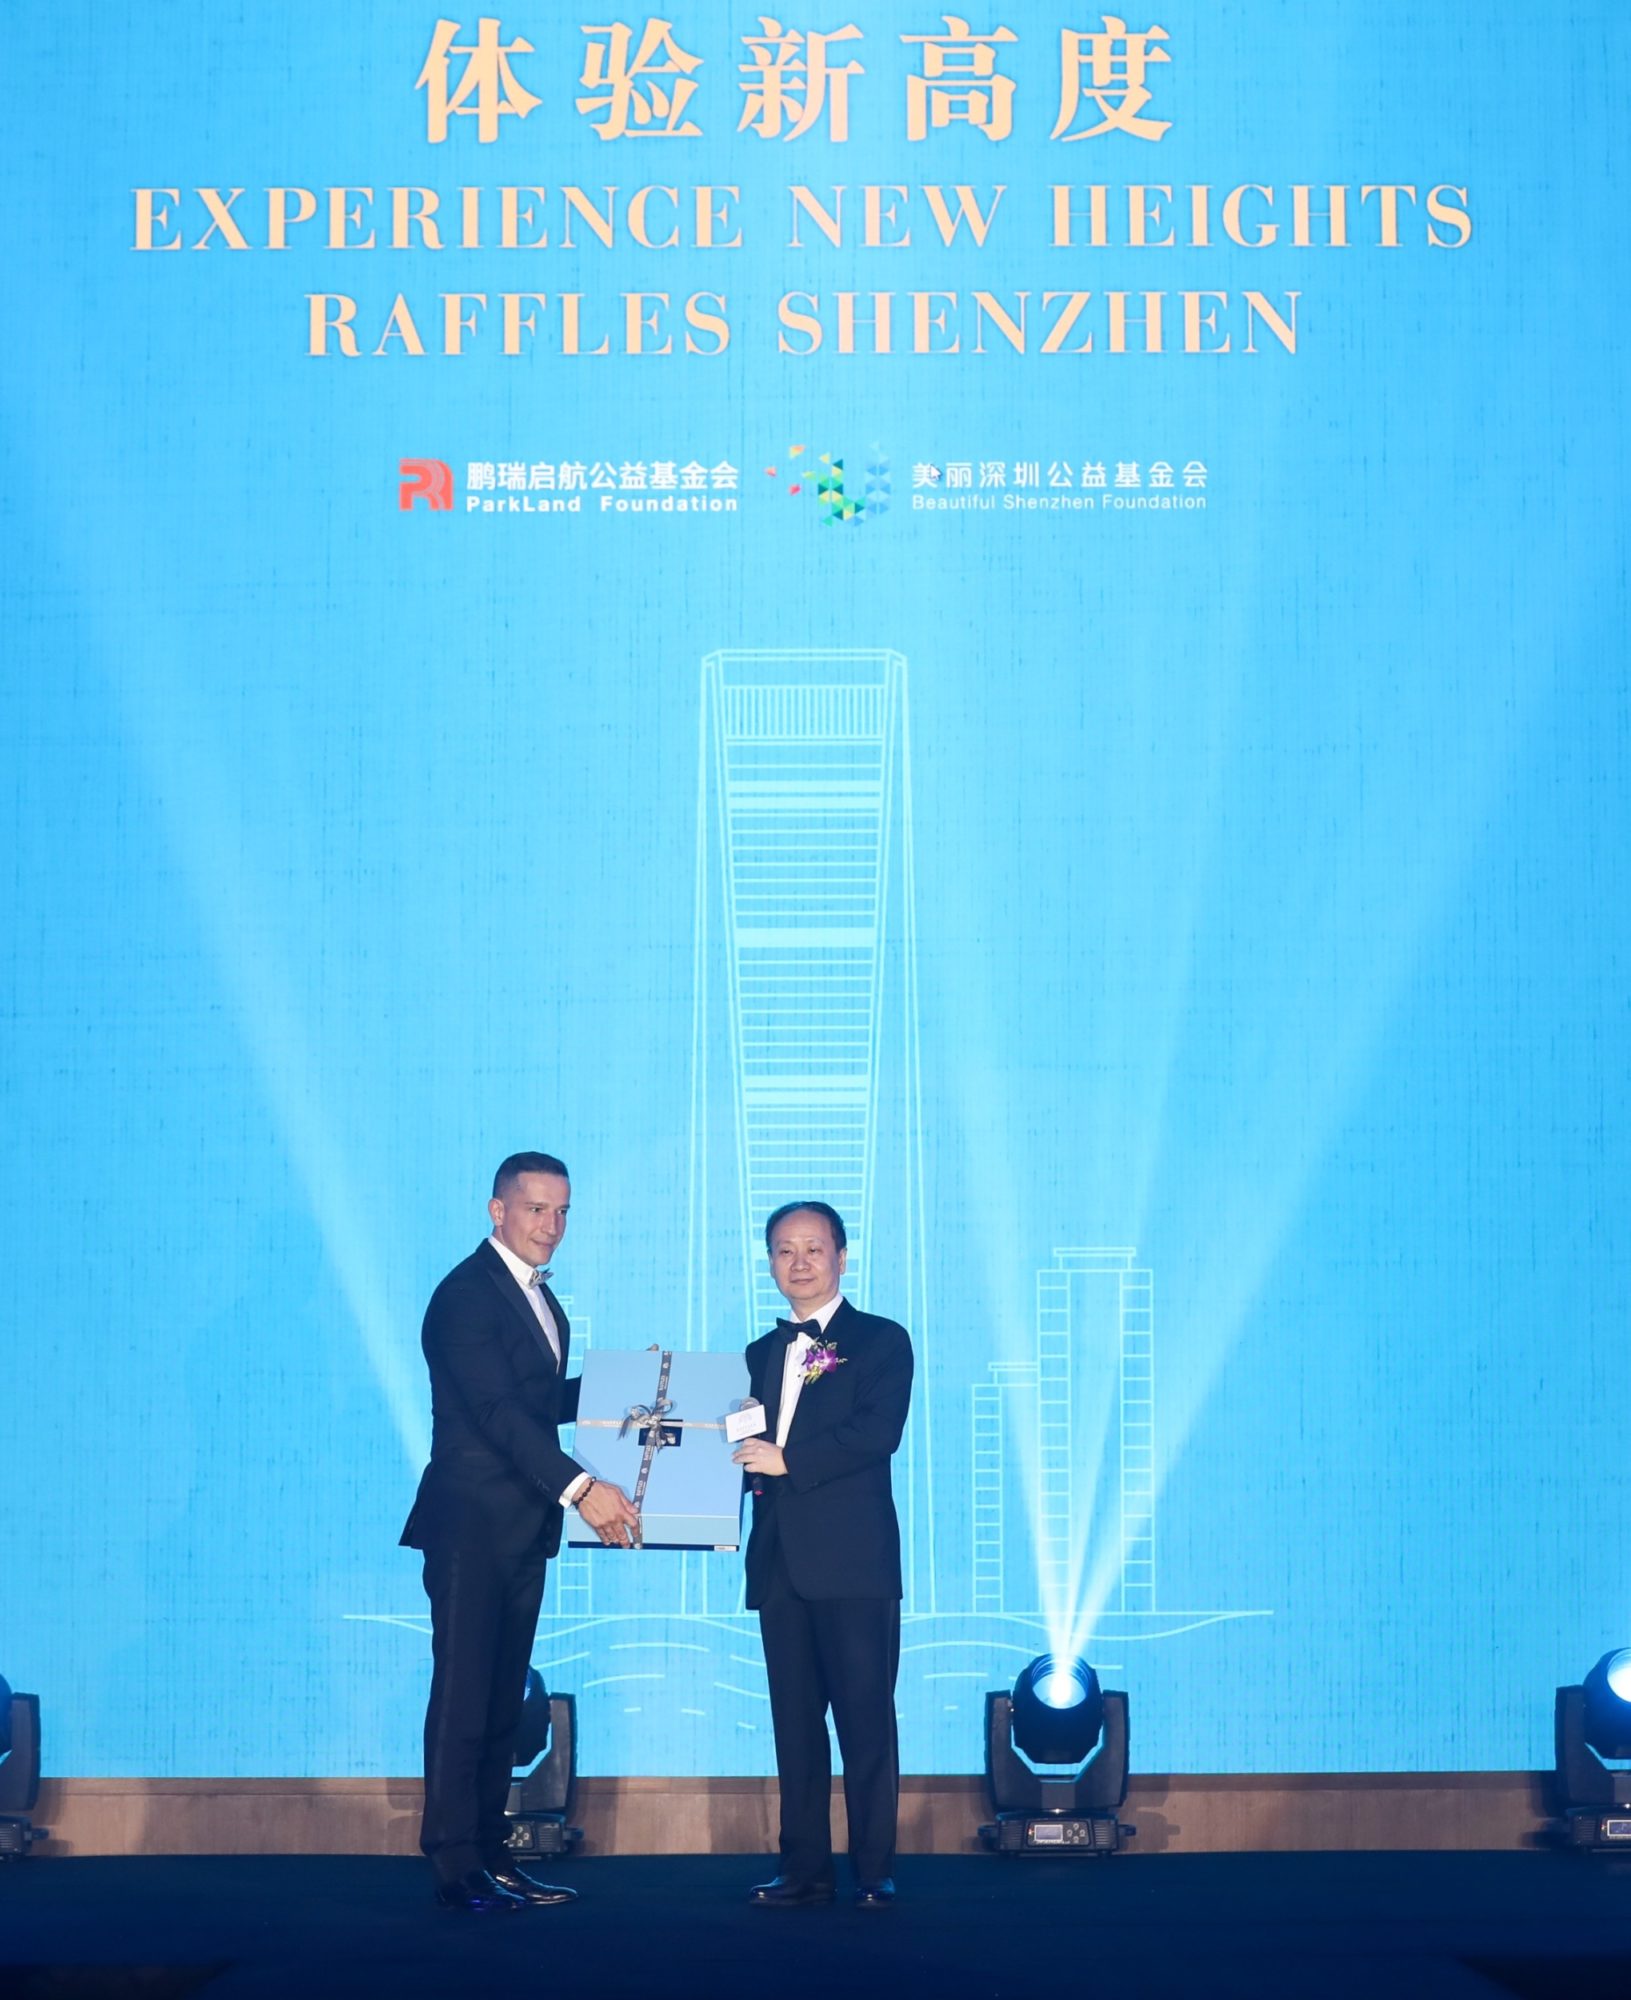 Raffles Shenzhen opening ceremony 1